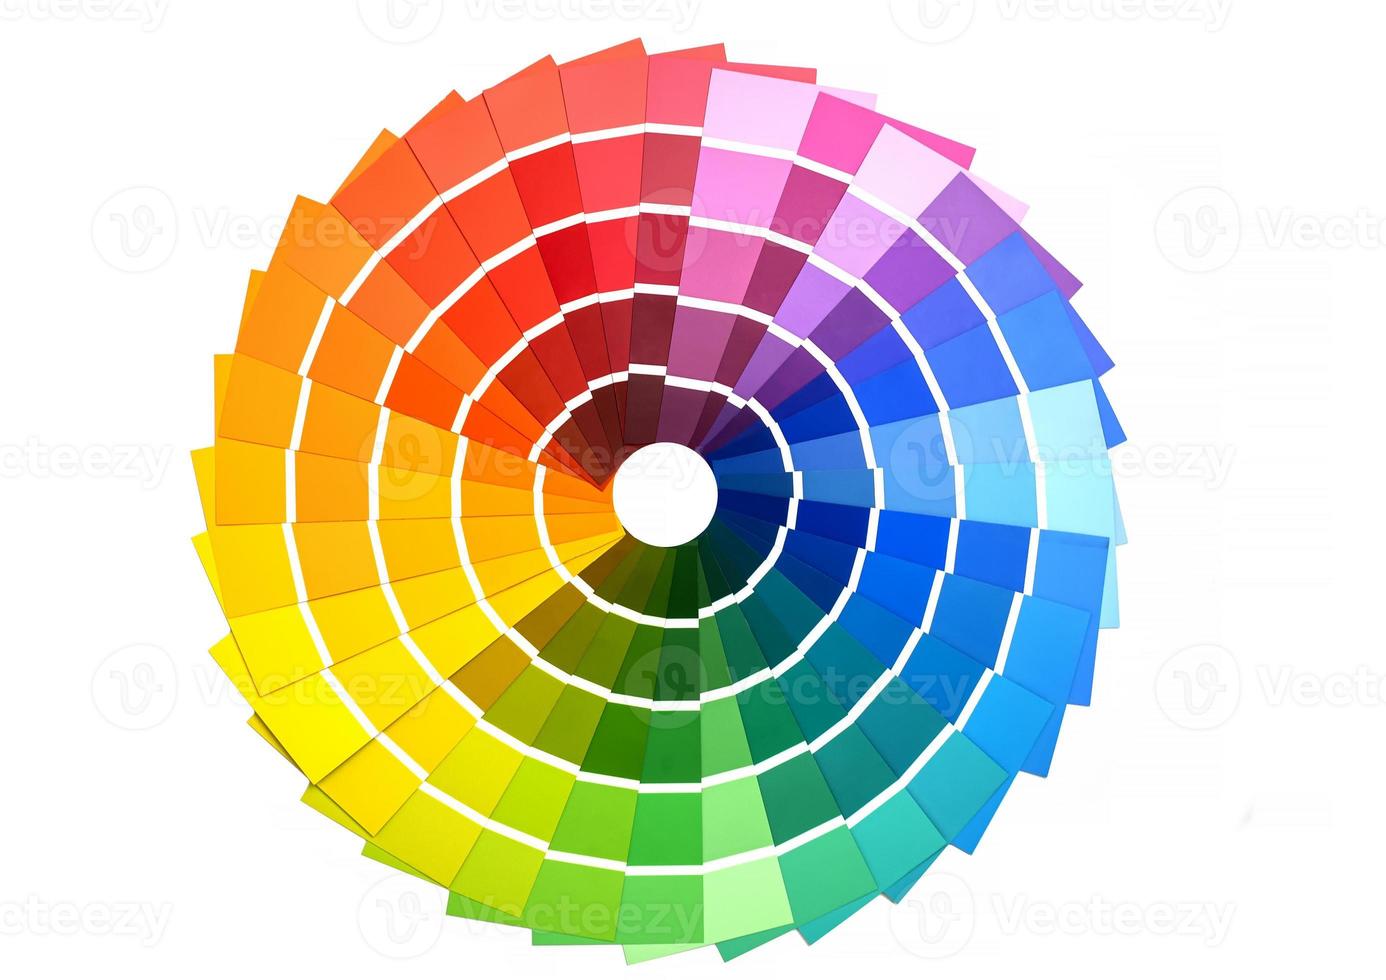 palette de cartes de couleurs, échantillons pour la définition des couleurs. guide des échantillons de peinture, catalogue couleur. photo en gros plan.